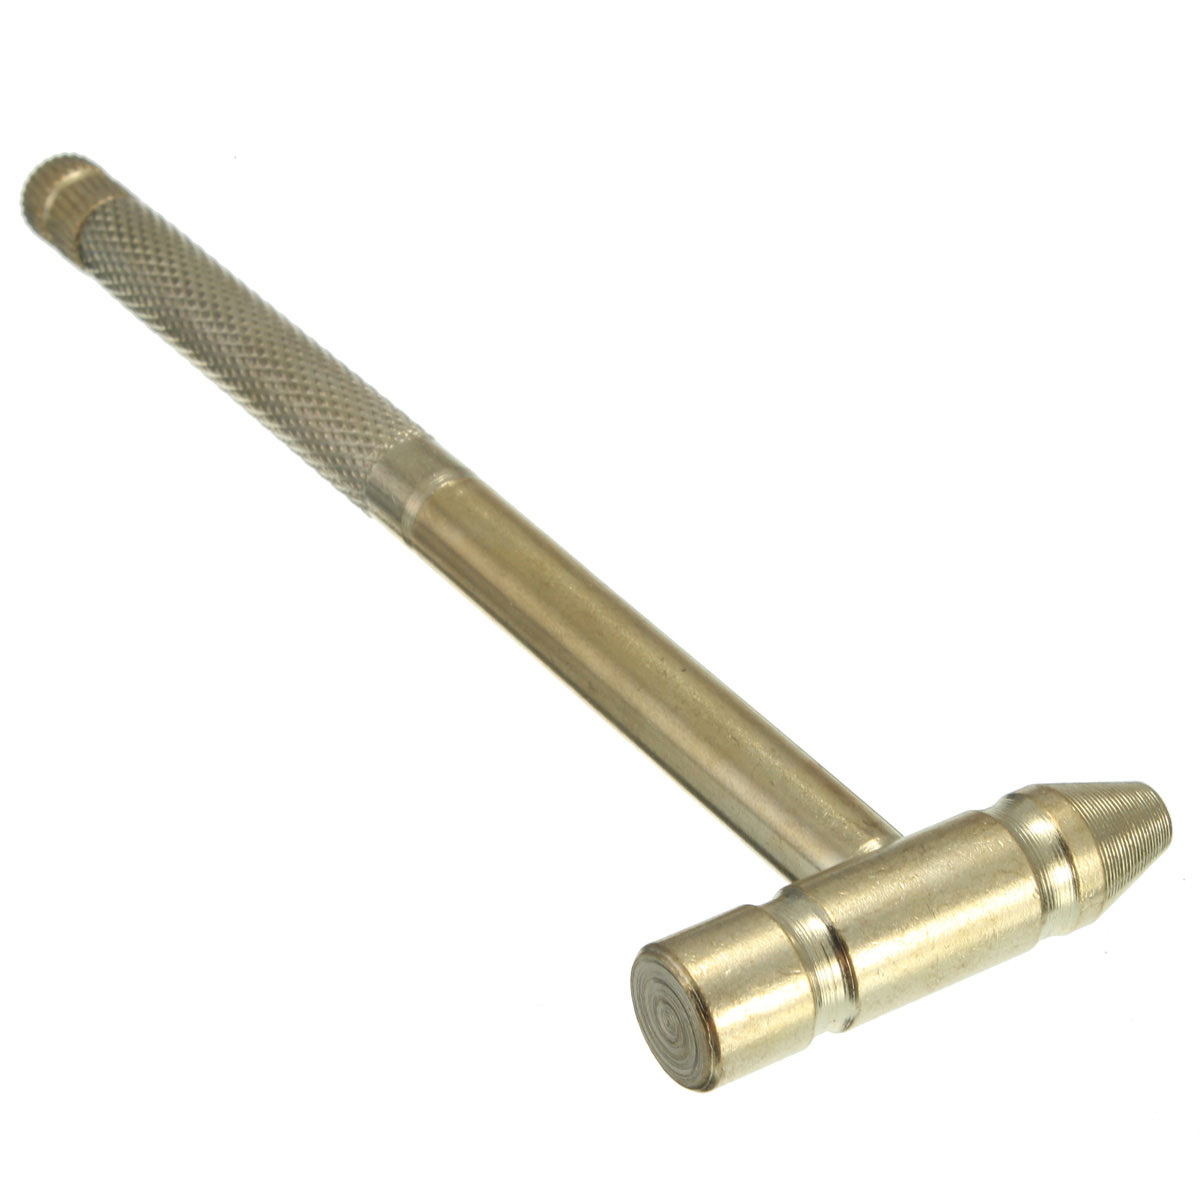 Micro-Mini-Copper-Hammer-Portable-4-Kinds-Models-Screwdrivers-DIY-Tools-977136